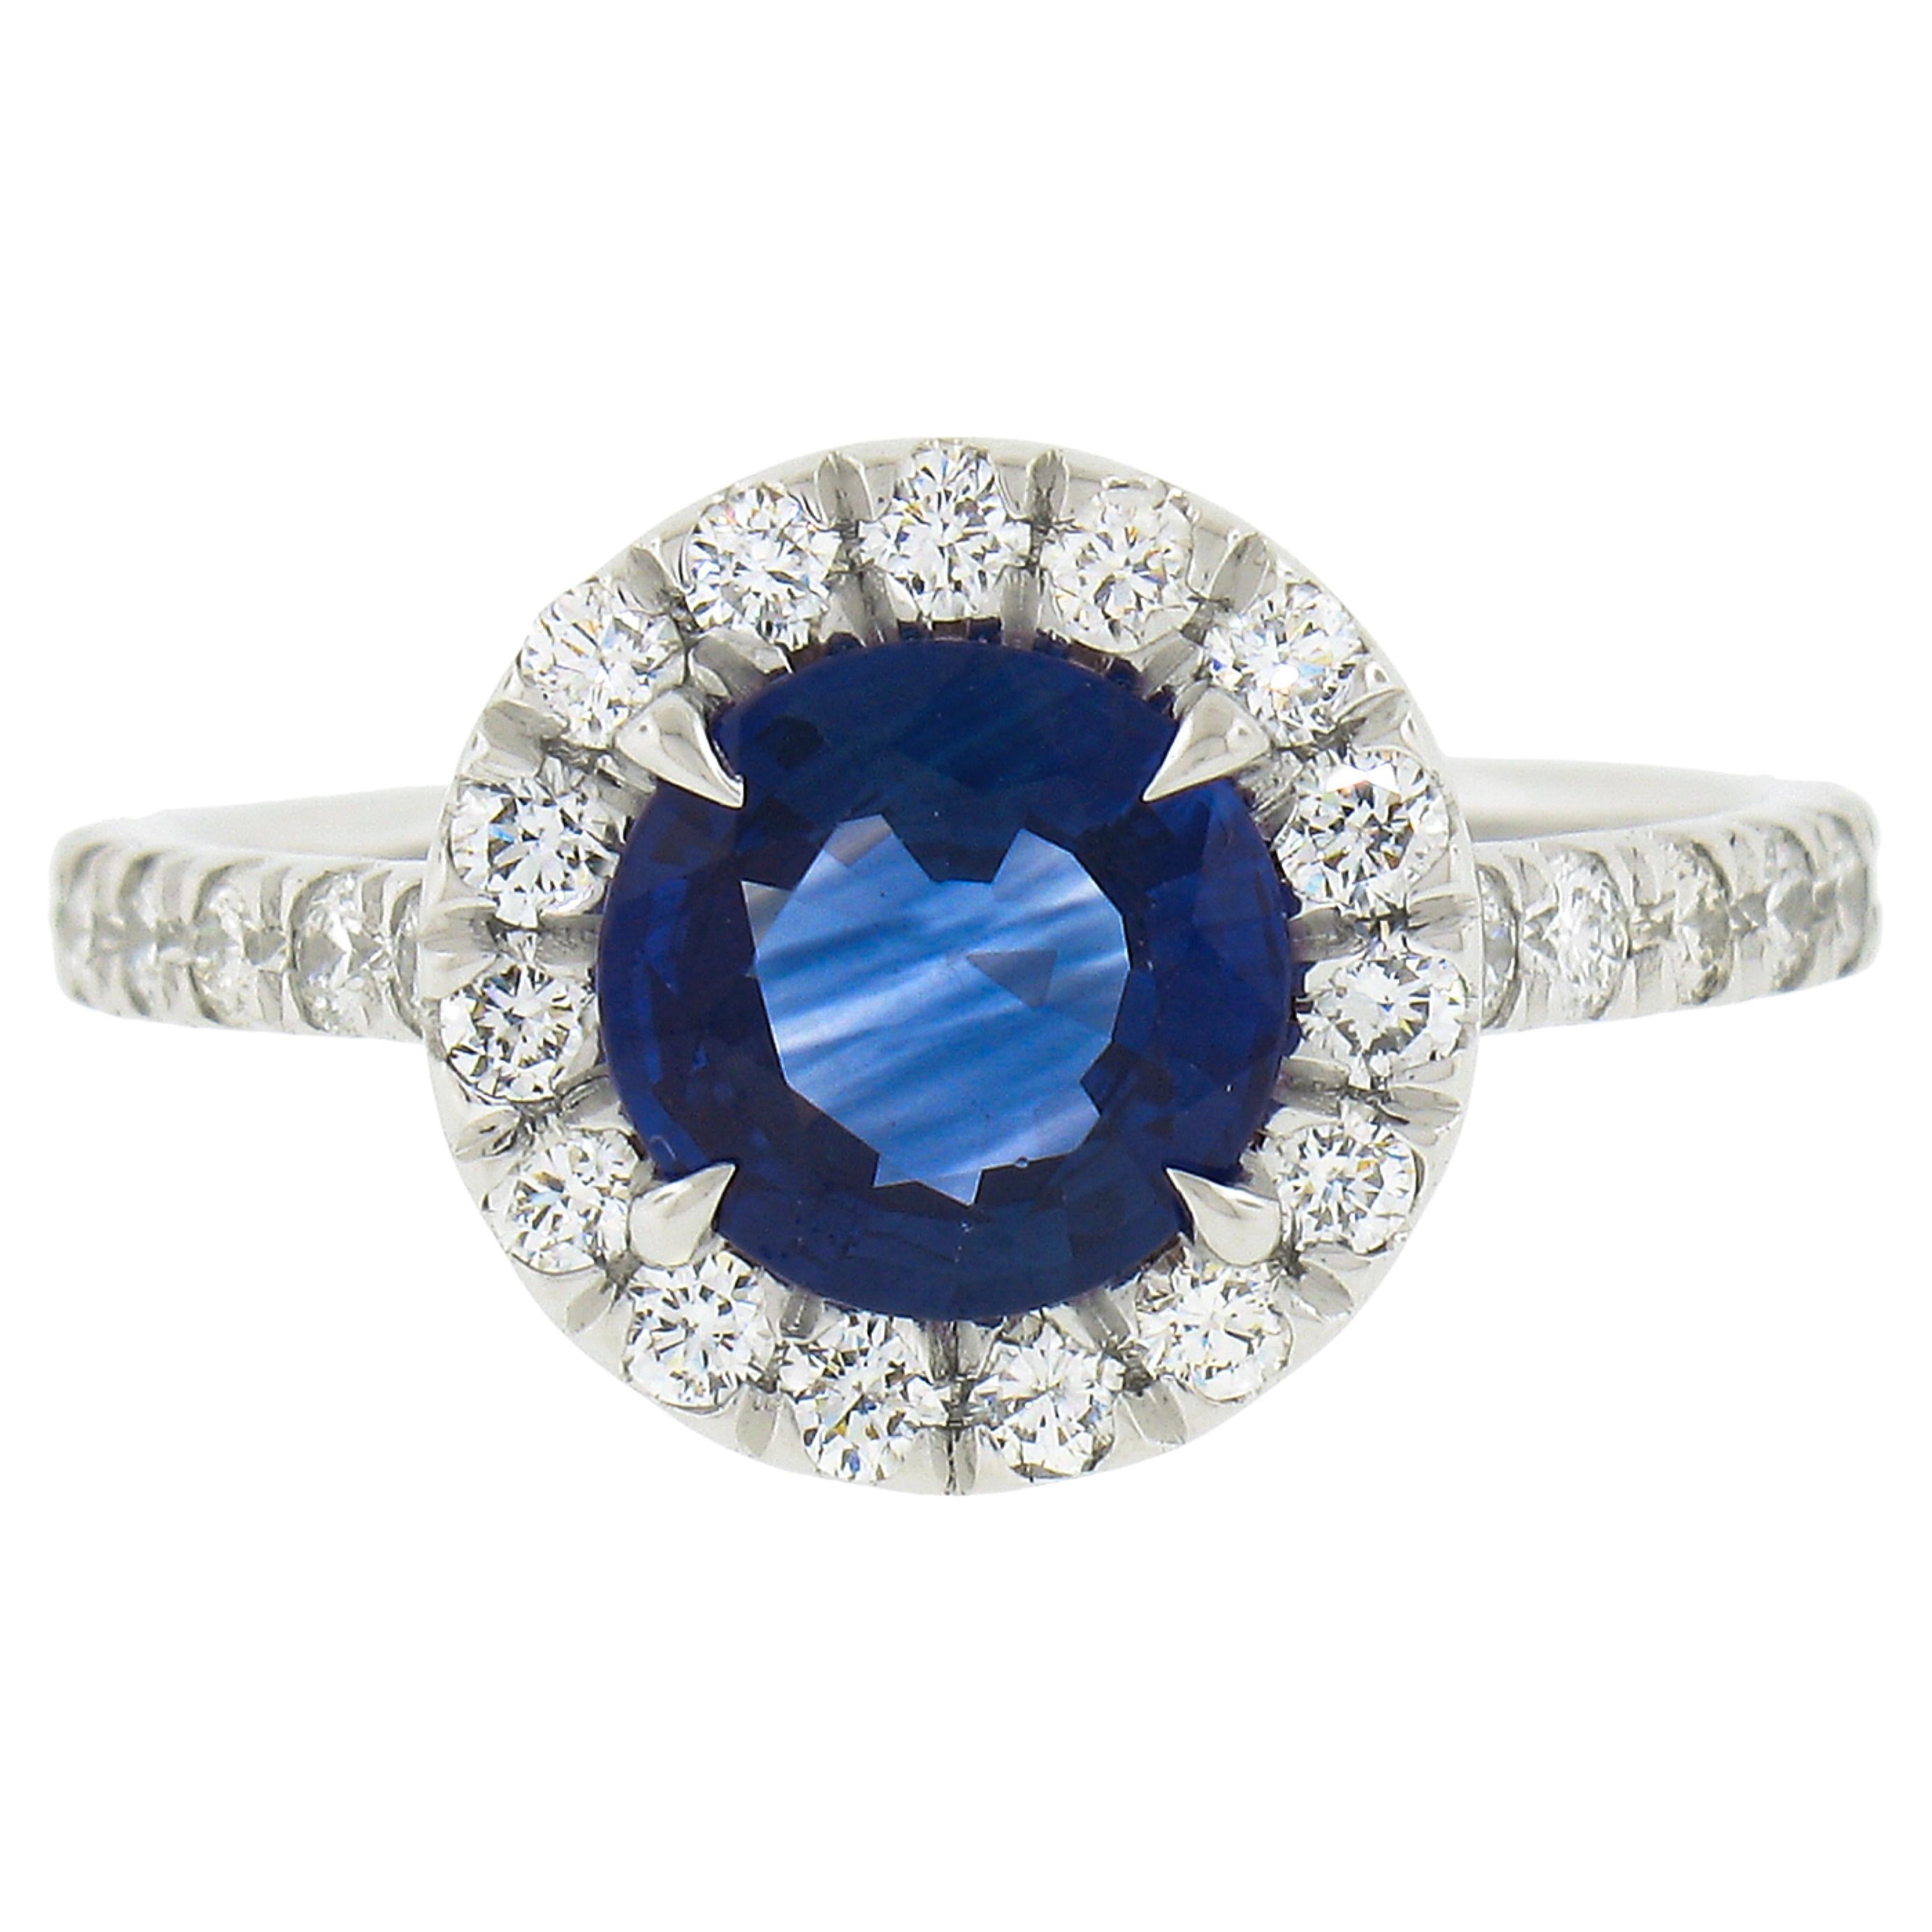 NOUVEAU Bague en platine avec saphir bleu rond de Ceylan et halo de diamants brillants de 2,21 carats certifiés GIA